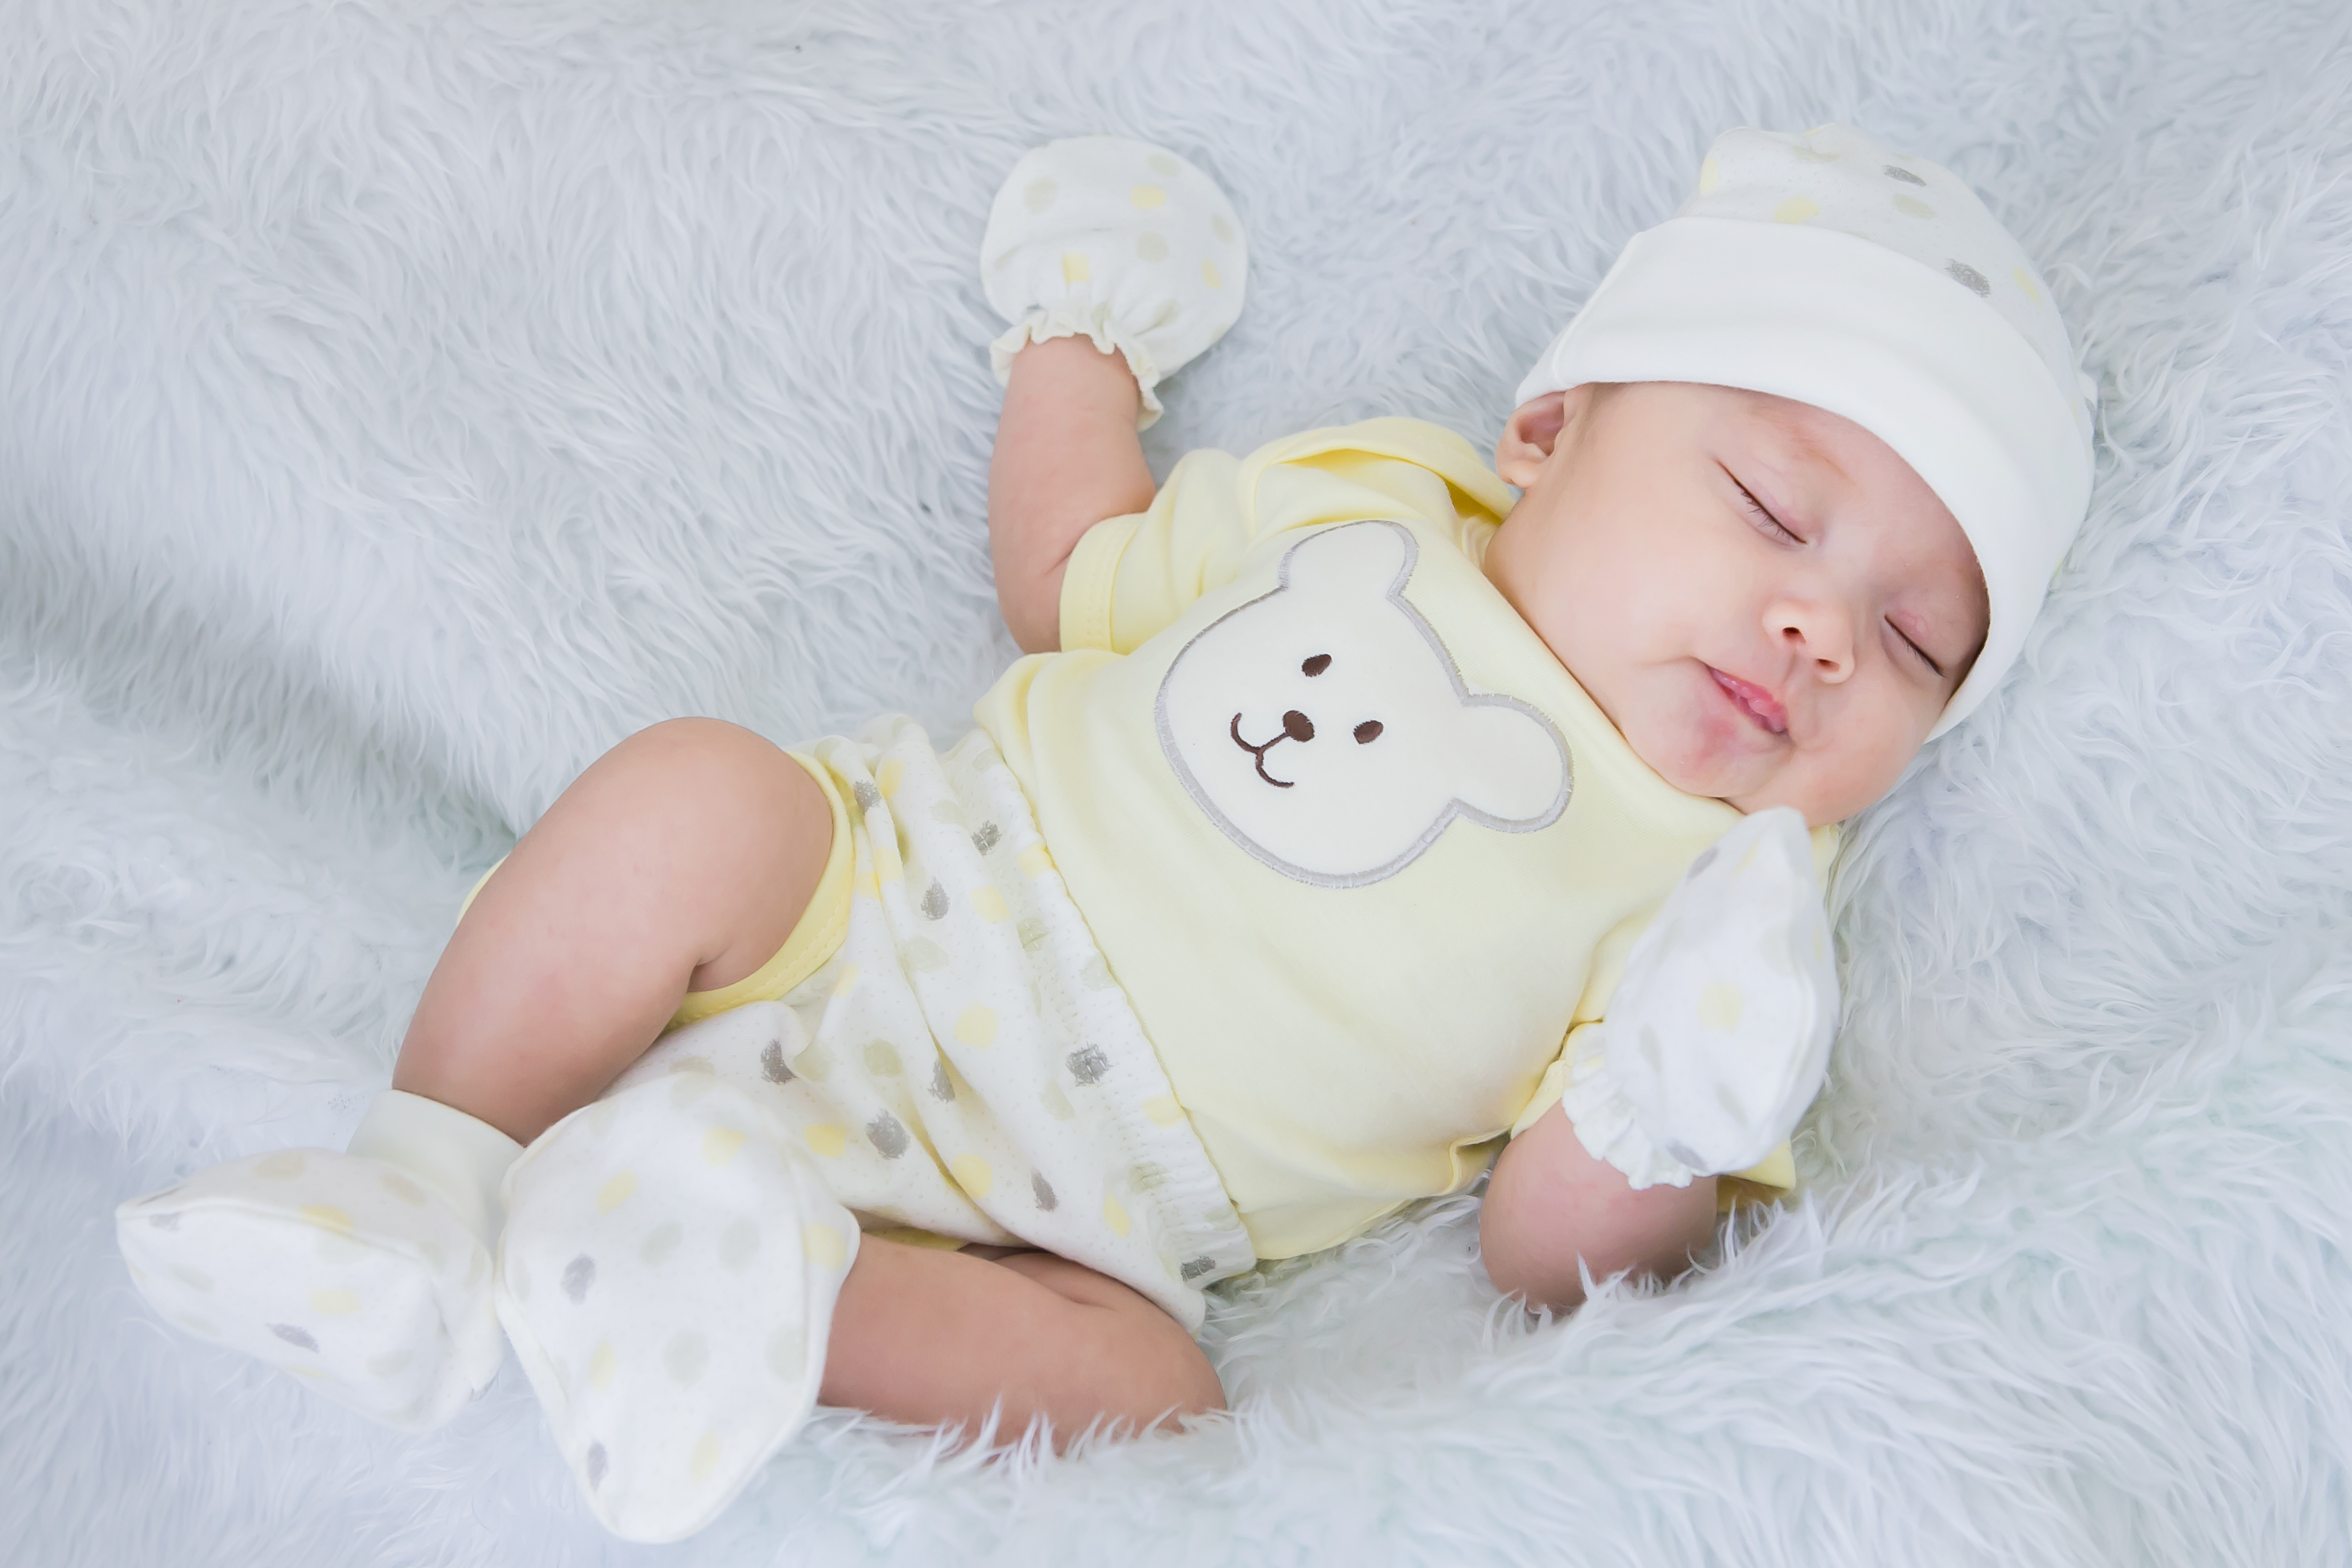 Baby Bright Newborn Baby Boy Clothes Essentials Shower Gift Set - 14 Pieces, 0-3 Months - image 4 of 6